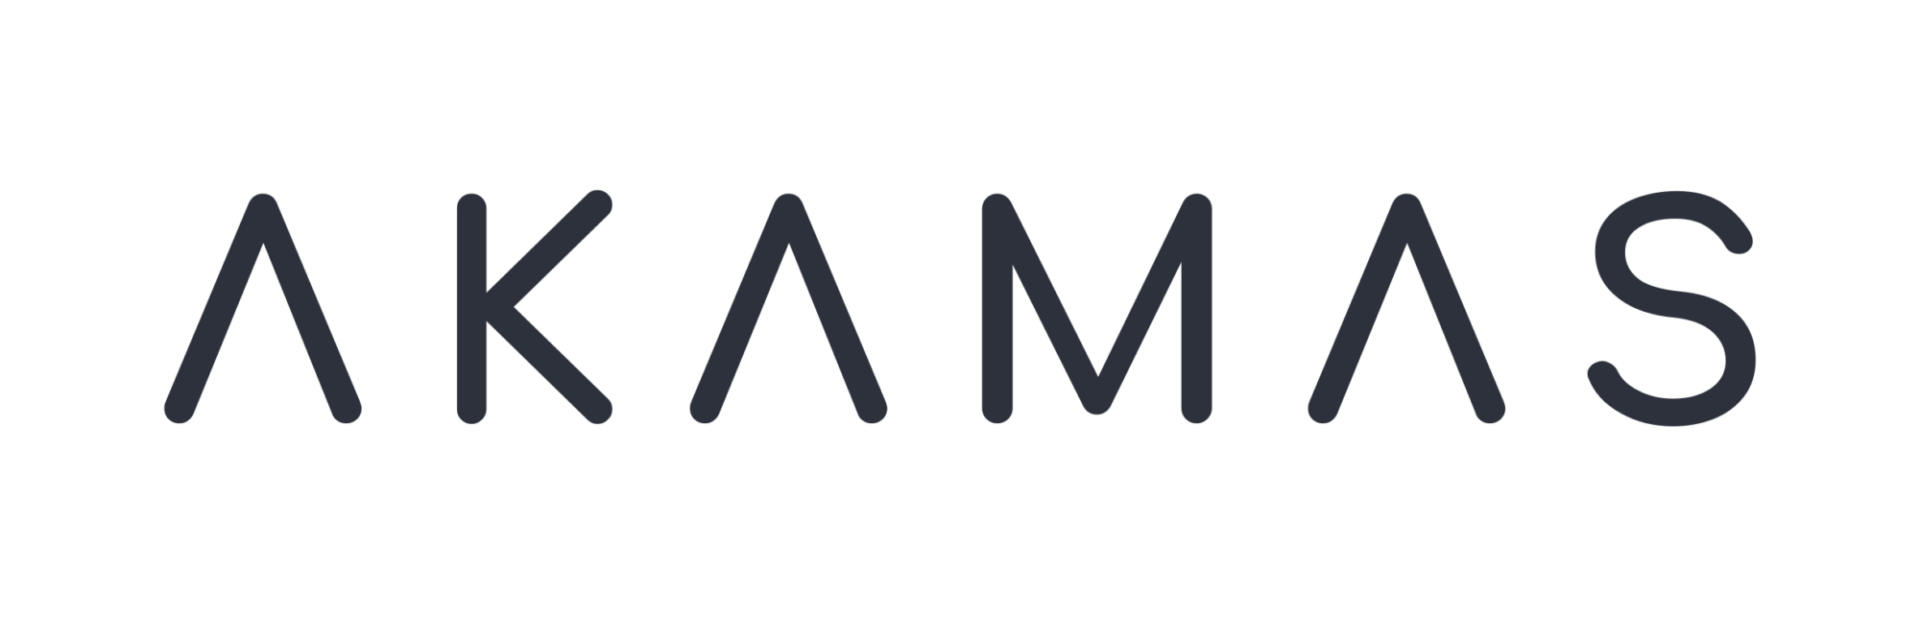 Akamas logo